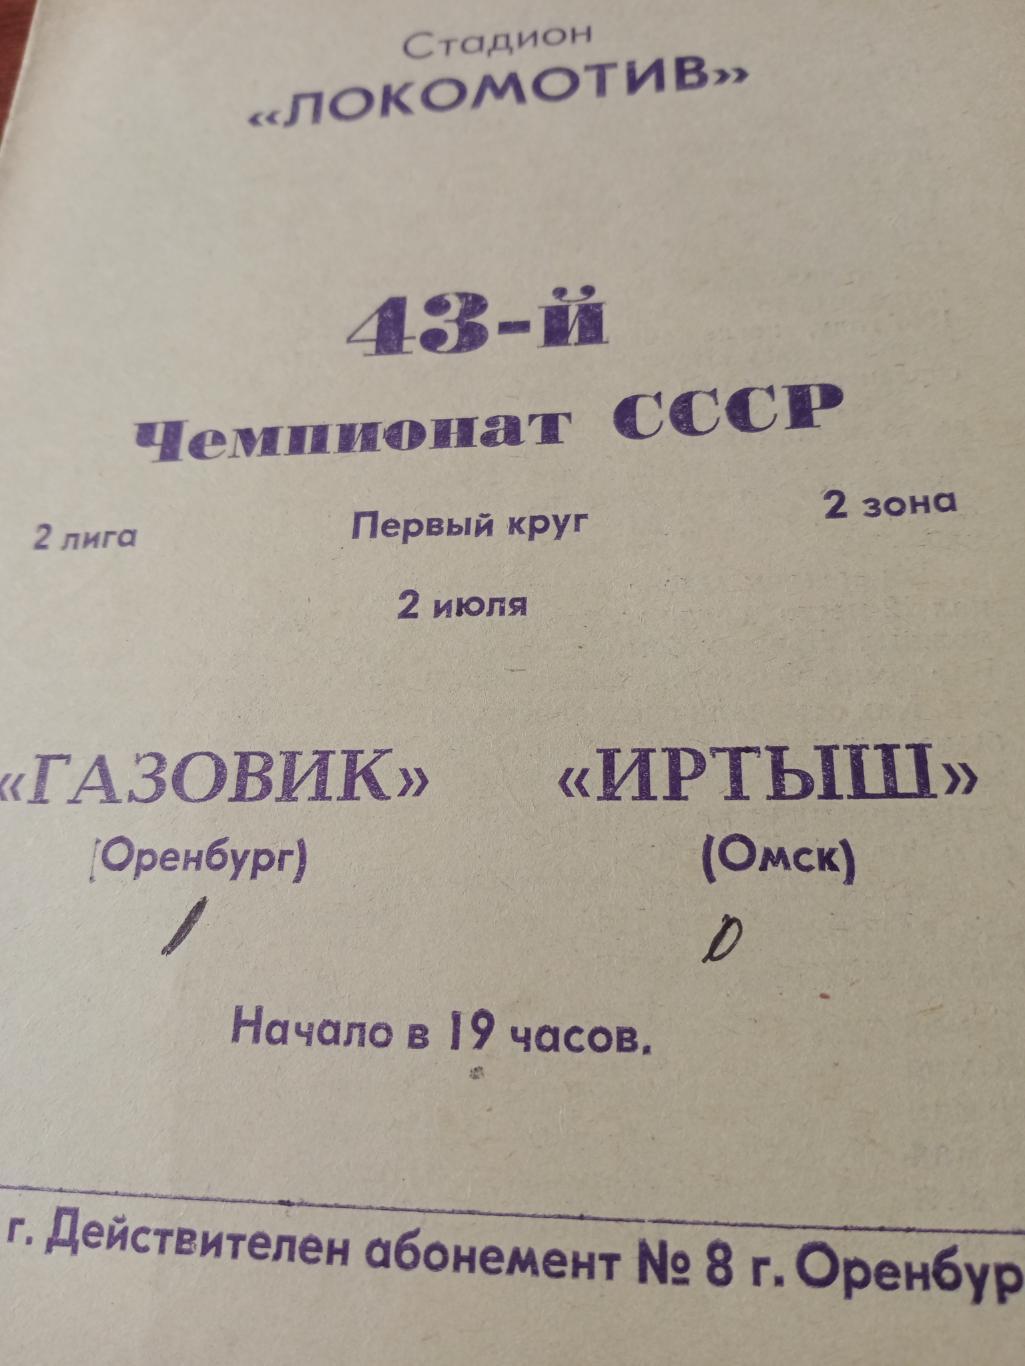 Газовик Оренбург - Иртыш Омск. 2 июля 1980 год